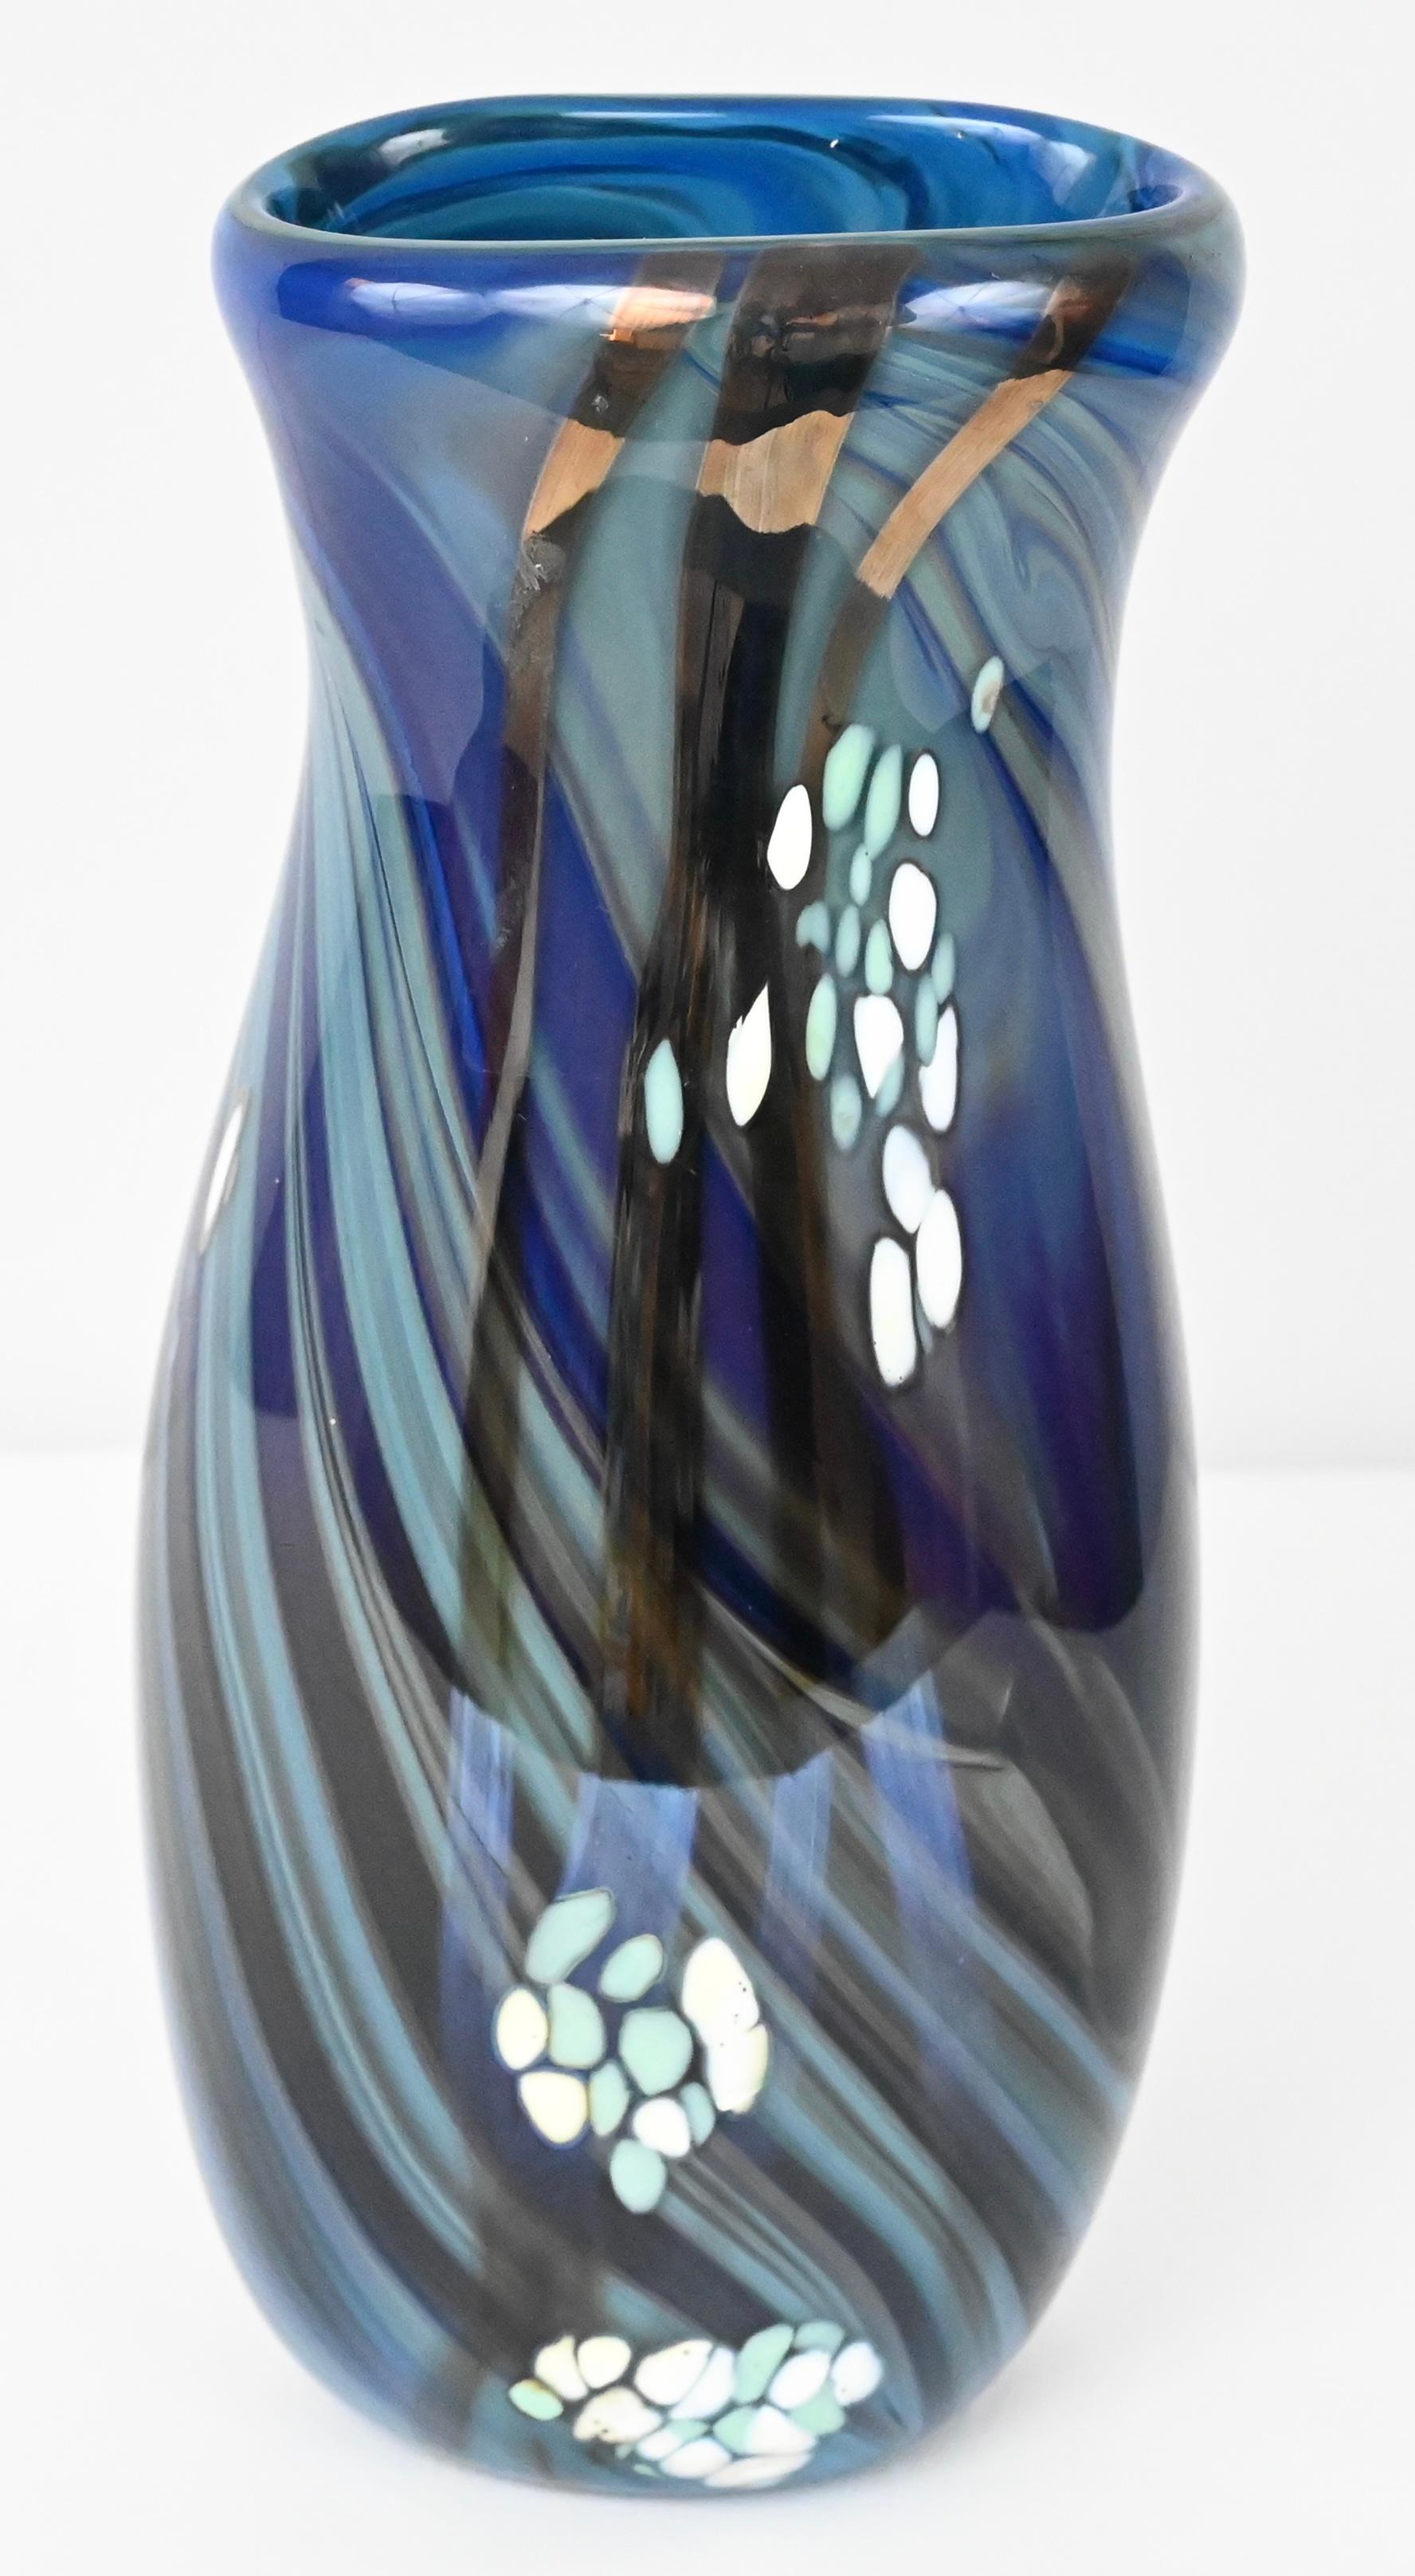 French Mid-Century Art Glass Flower Vase Signed Swispot, Blue and White Art Glass Vase For Sale